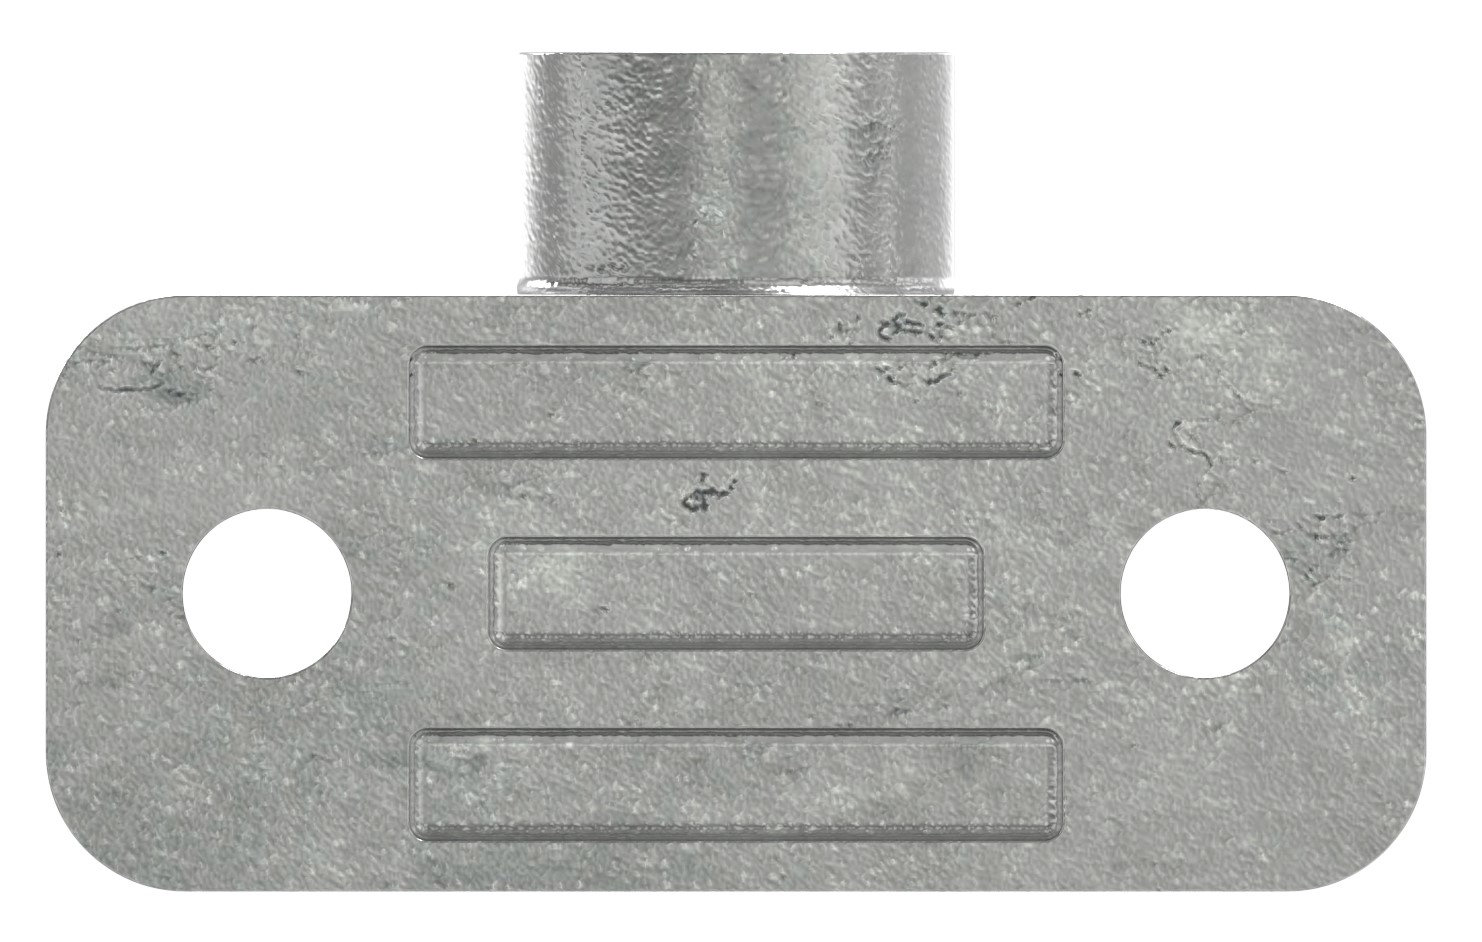 Rohrverbinder | Wandhalter | 246D48 | 48,3 mm | 1 1/2" | Feuerverzinkt u. Elektrogalvanisiert